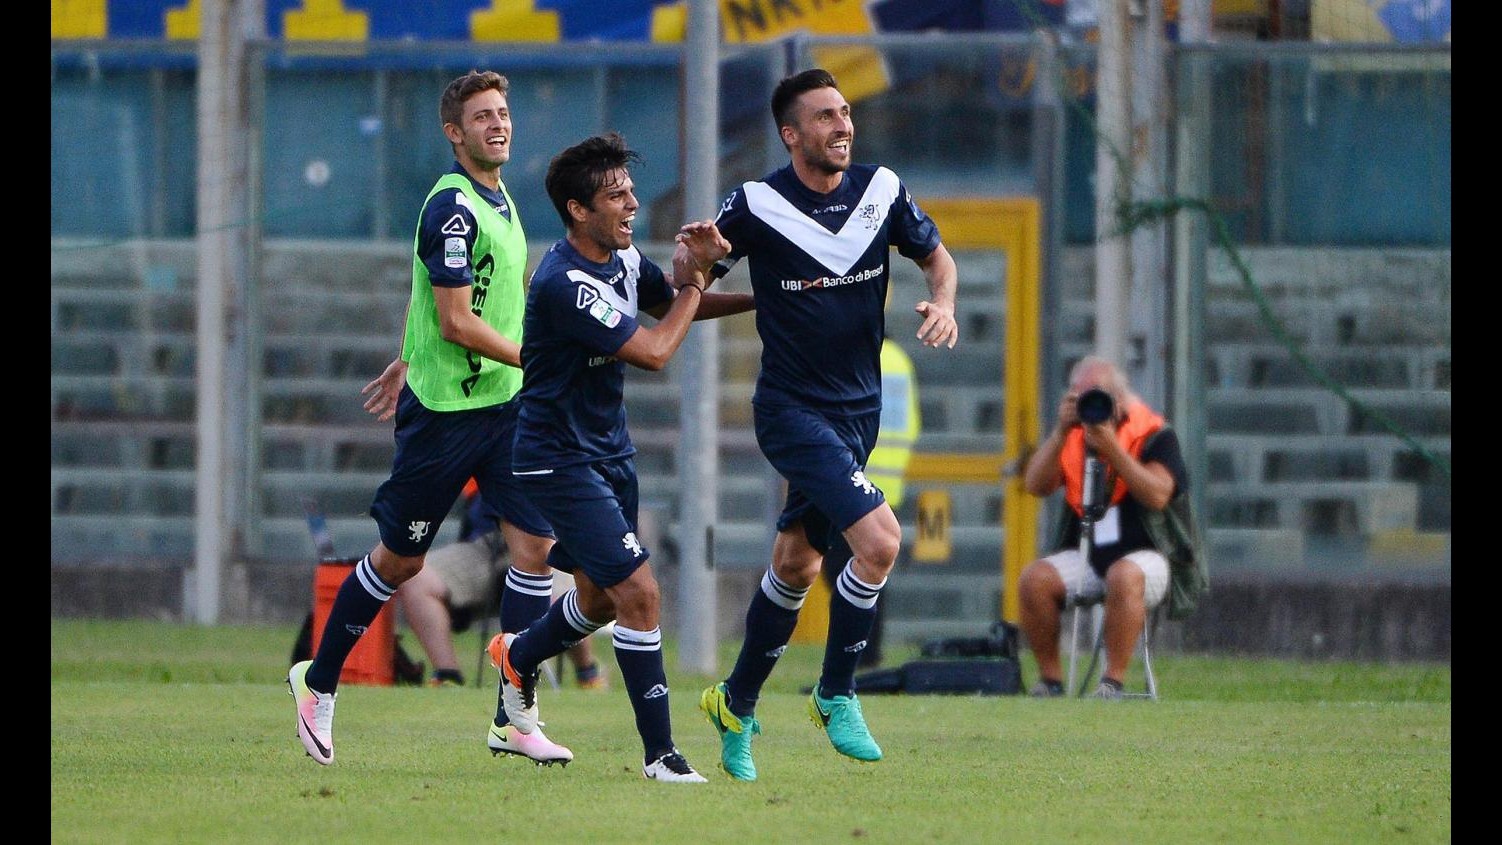 FOTO Serie B, Brescia batte Frosinone 2-0